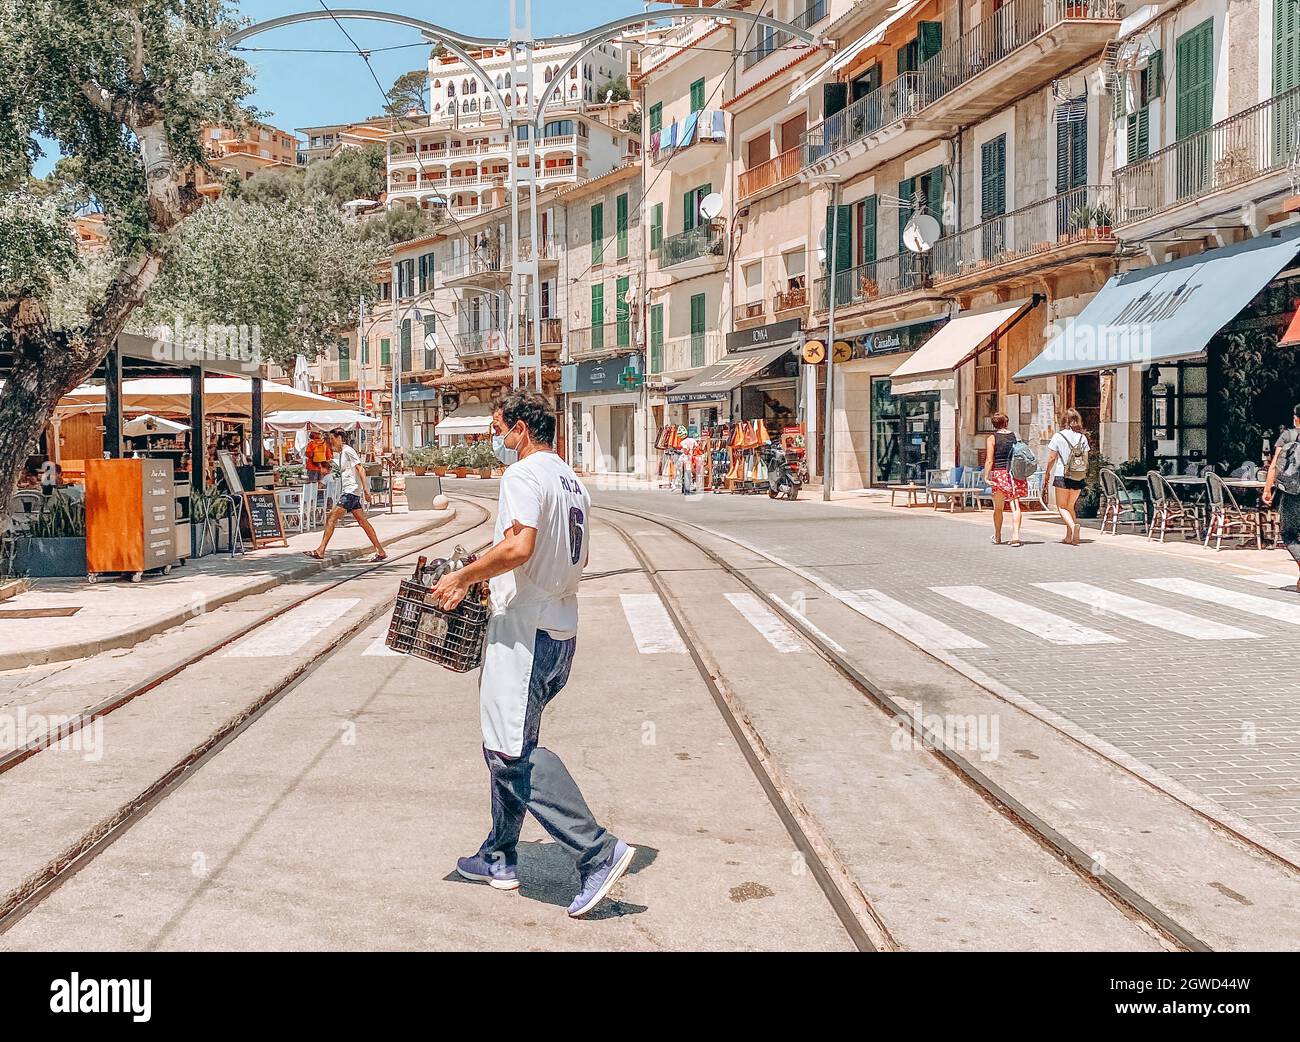 Camarero que lleva una maleta al otro lado de la calle con vías de tranvía Foto de stock